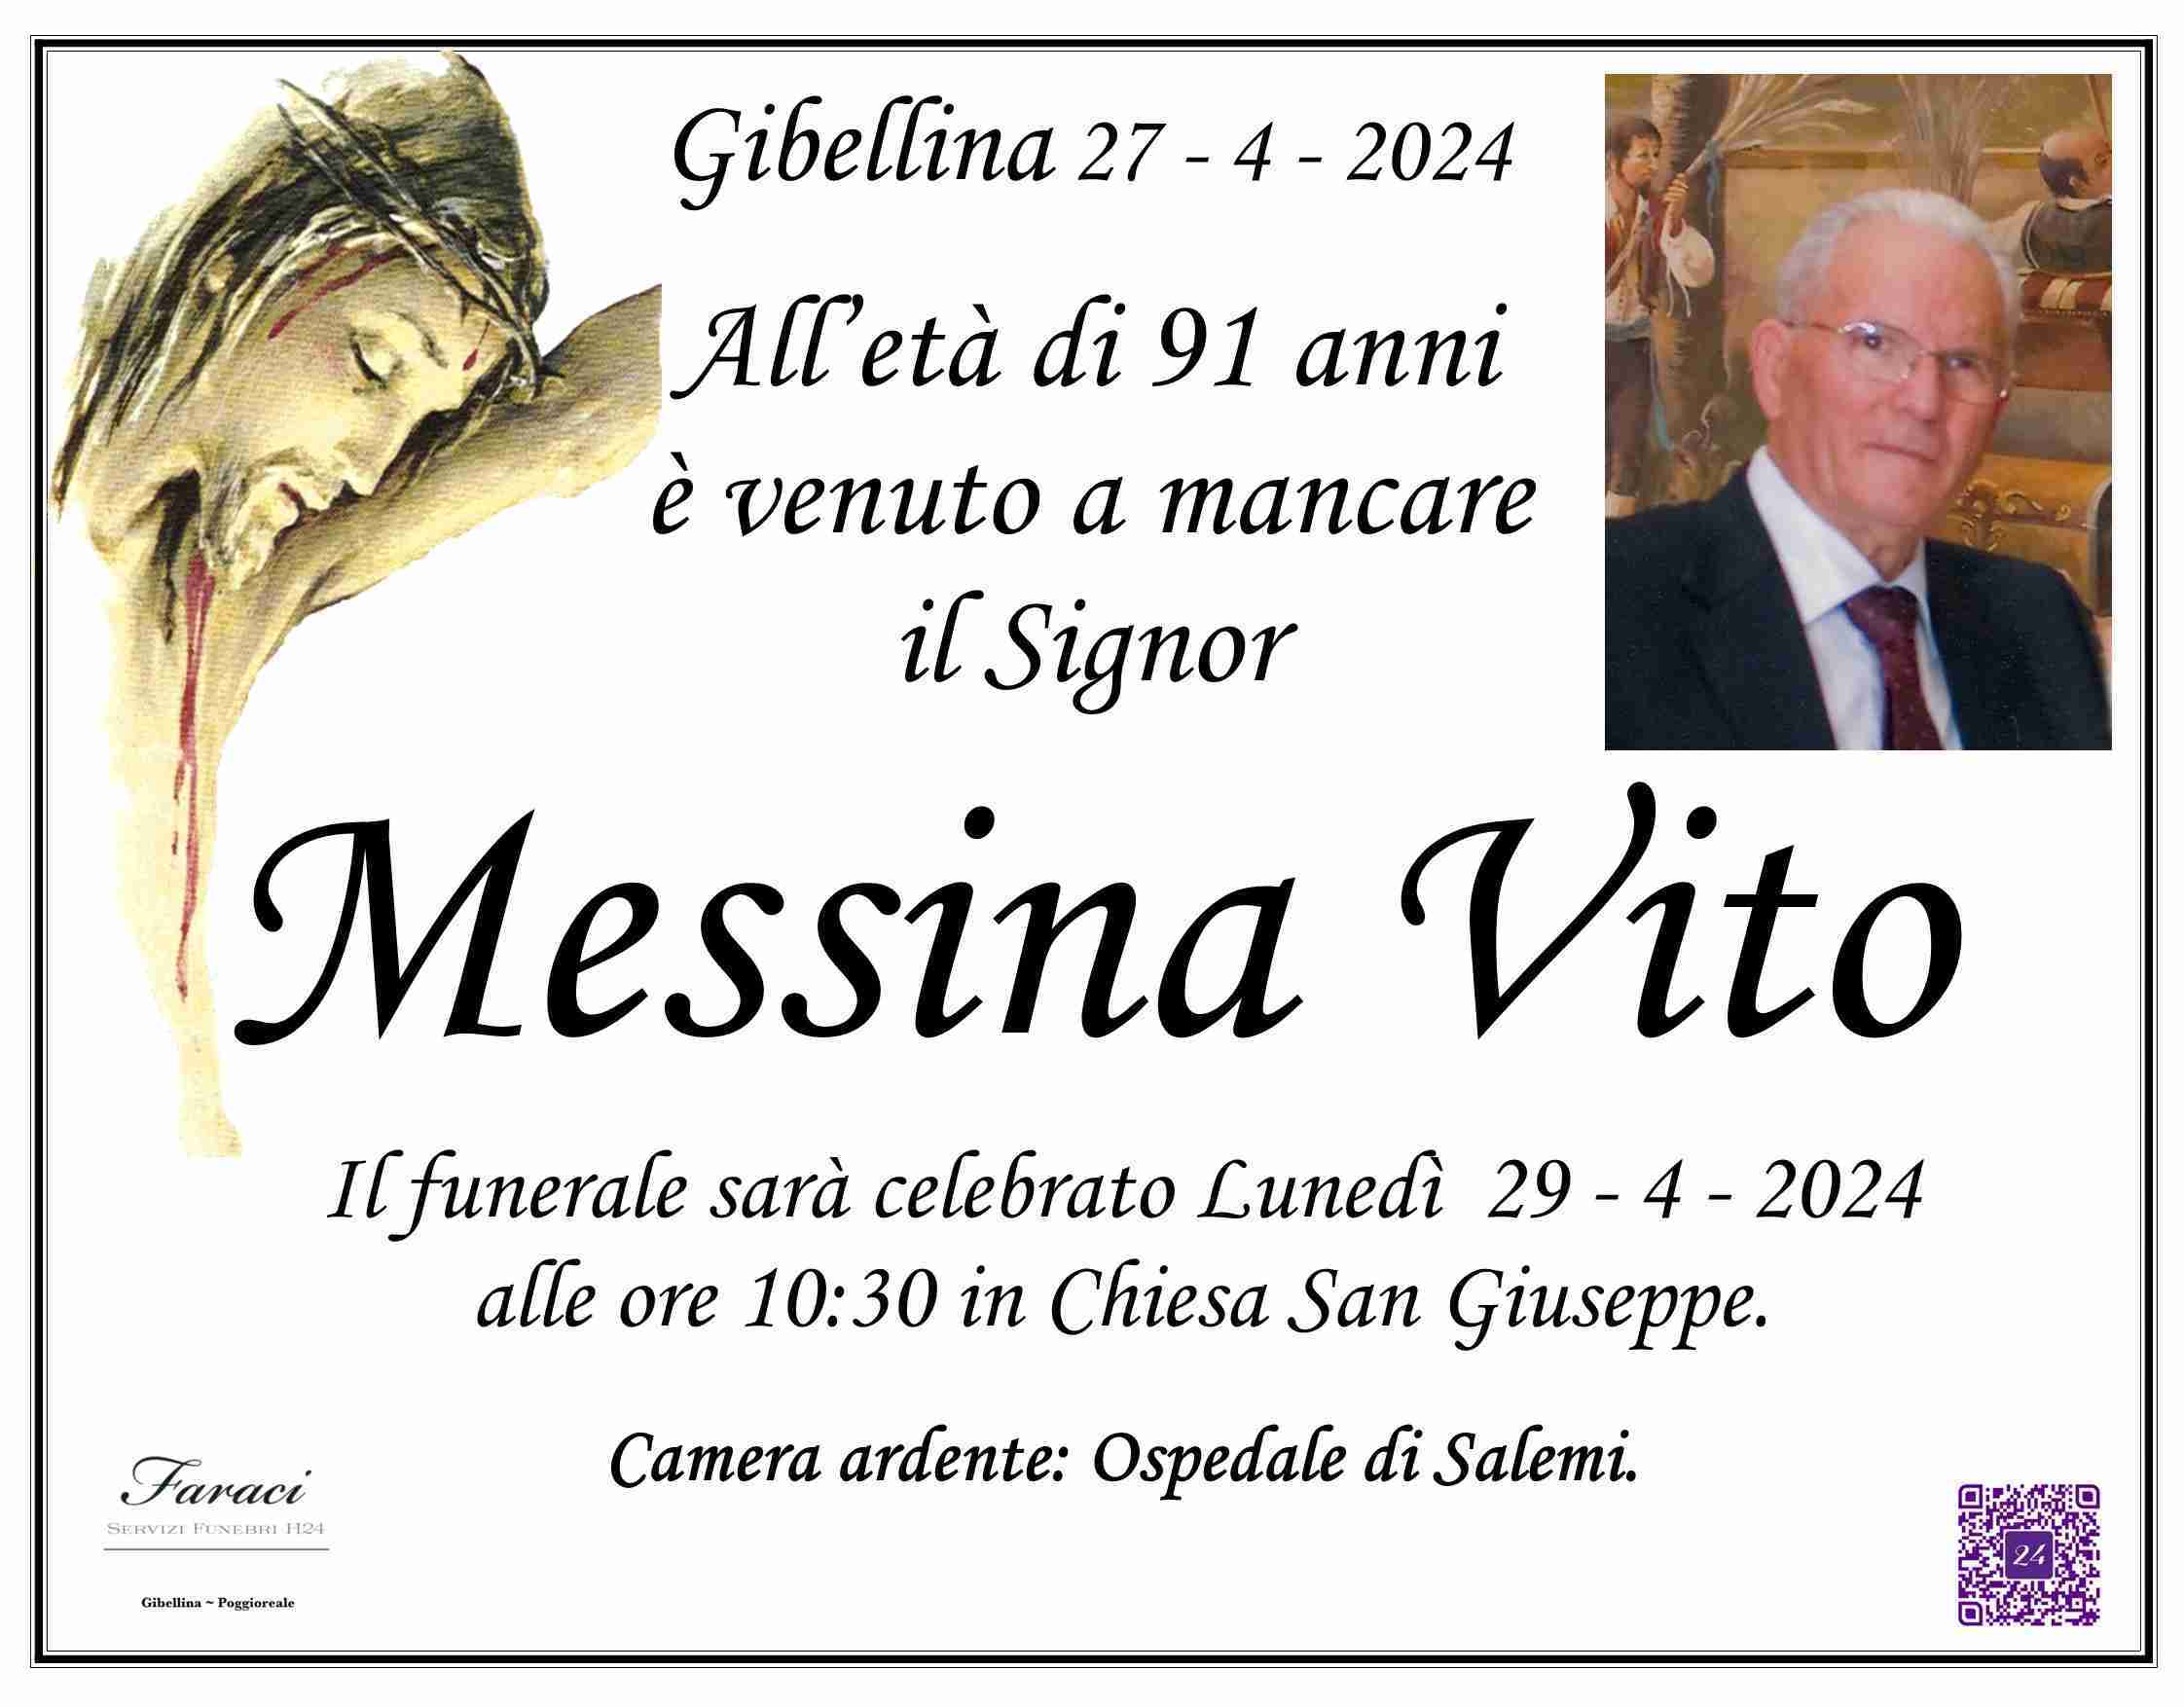 Vito Messina